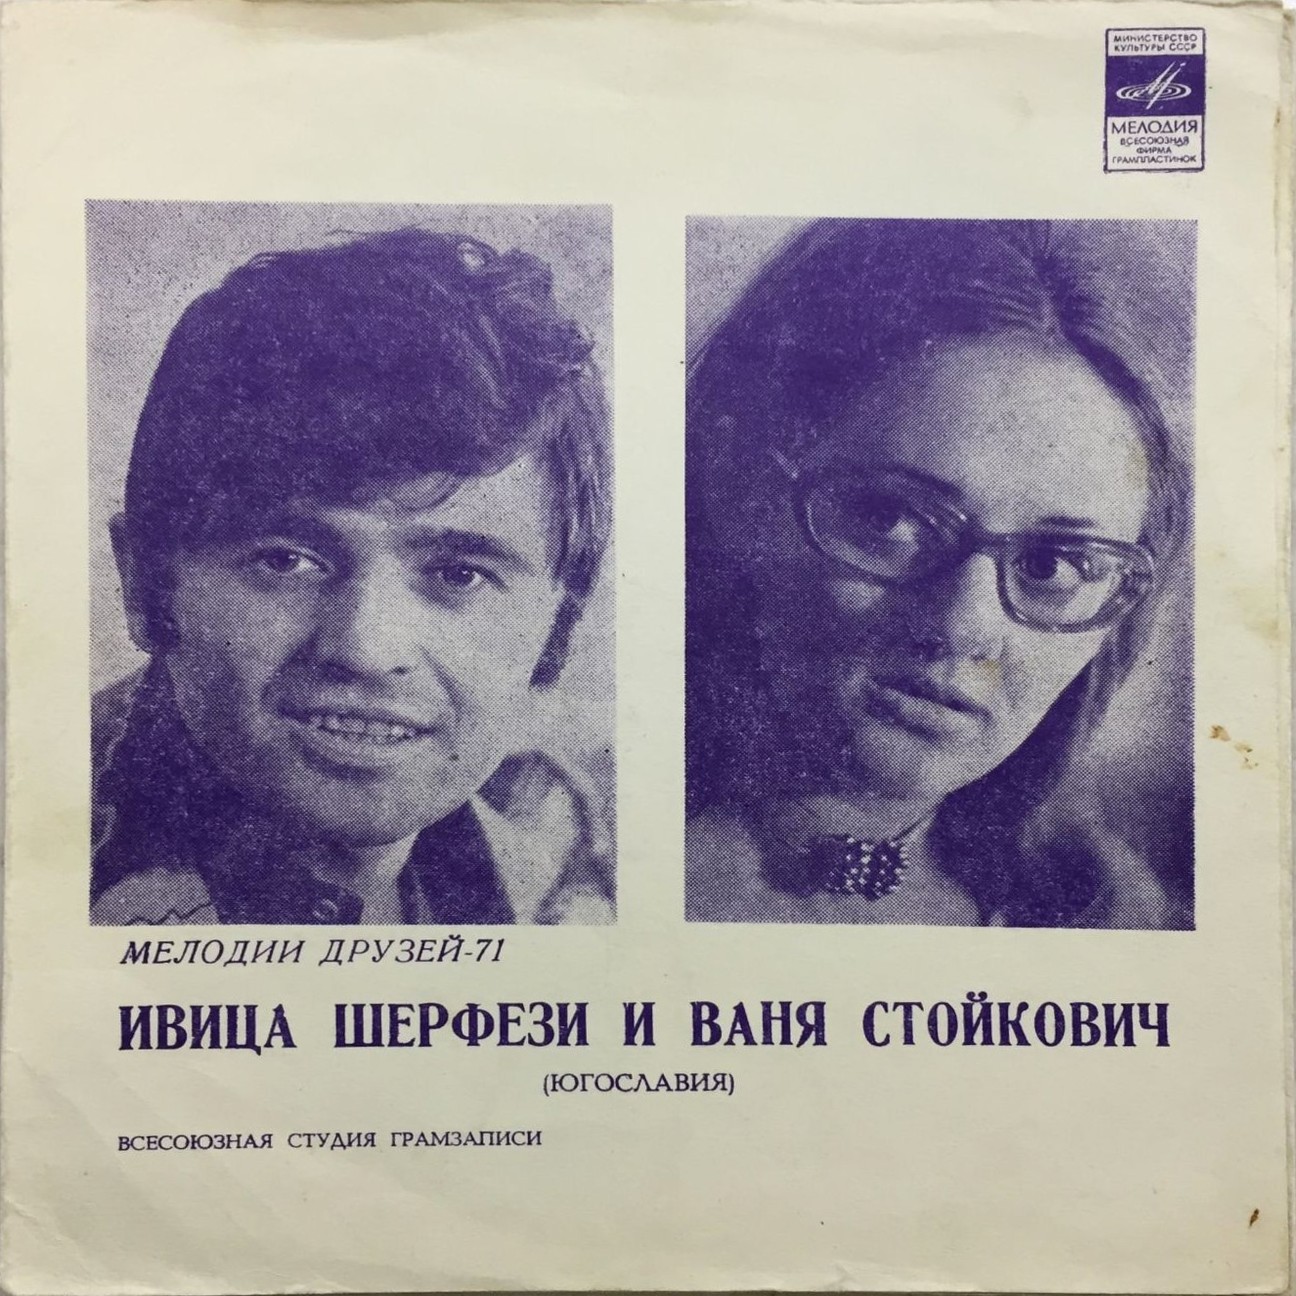 Мелодии друзей-71. Ивица Шерфези и Ваня Стойкович (Югославия)